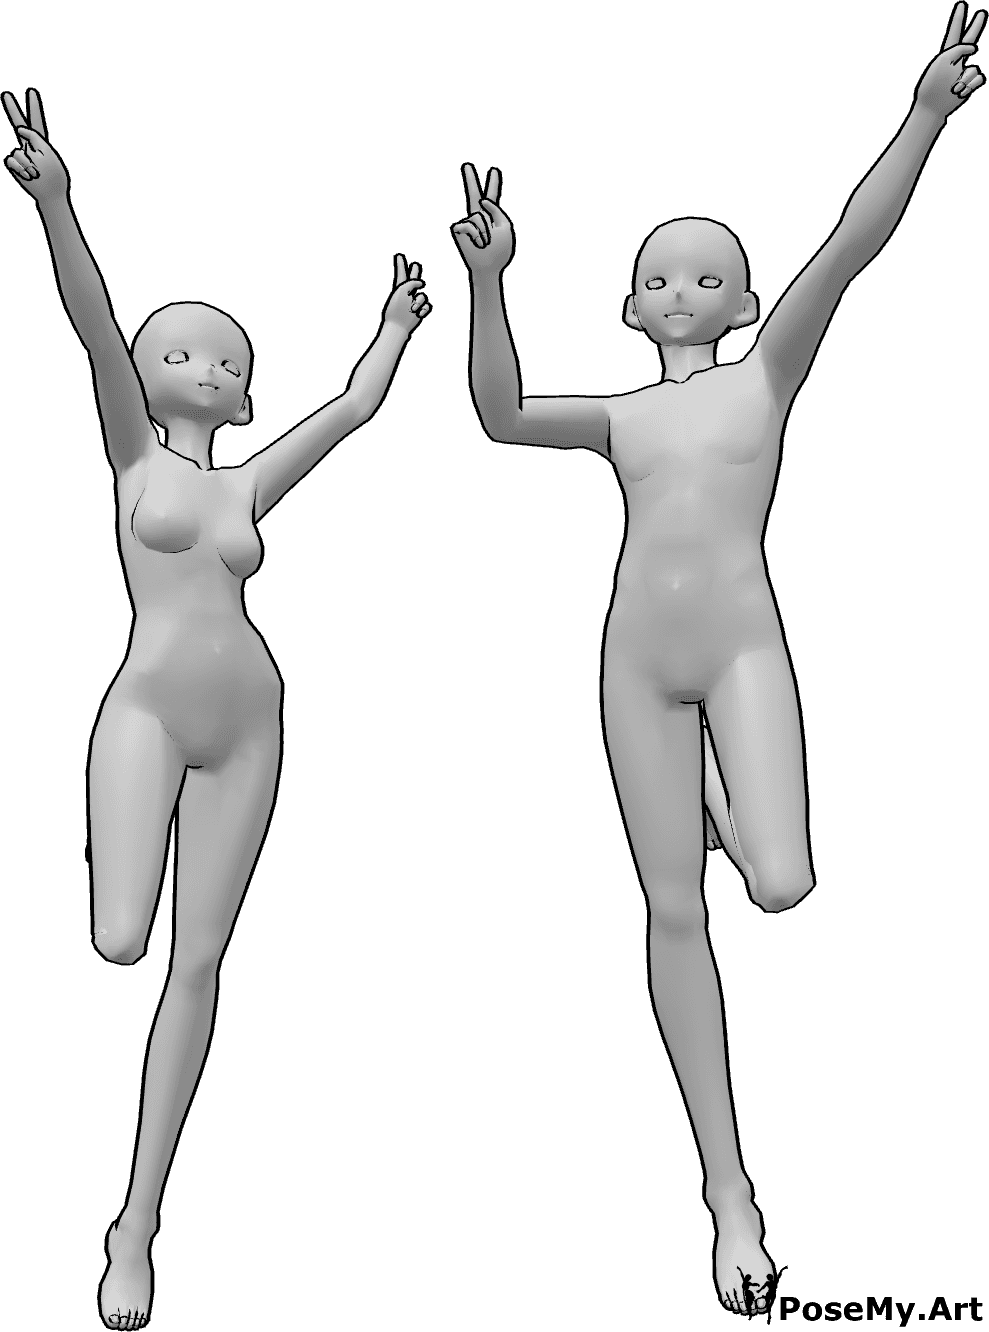 Referencia de poses- Anime saltando la paz pose - Anime femenino y masculino están saltando y mostrando el signo de la paz con ambas manos